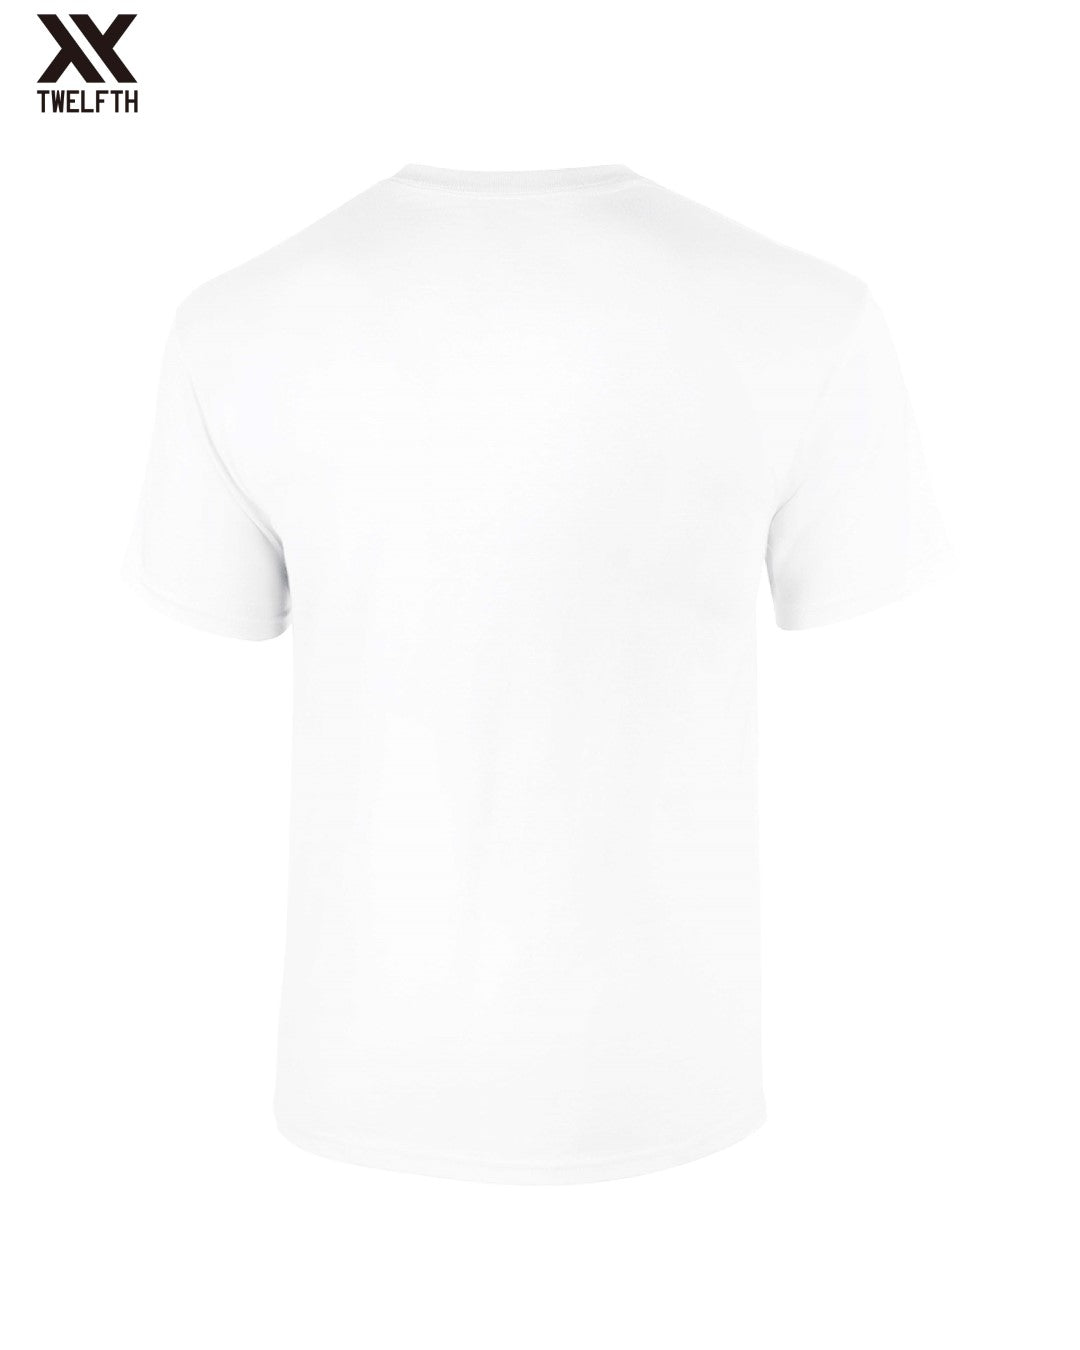 FIRMINO NO LOOK Pixel T-Shirt - Mens